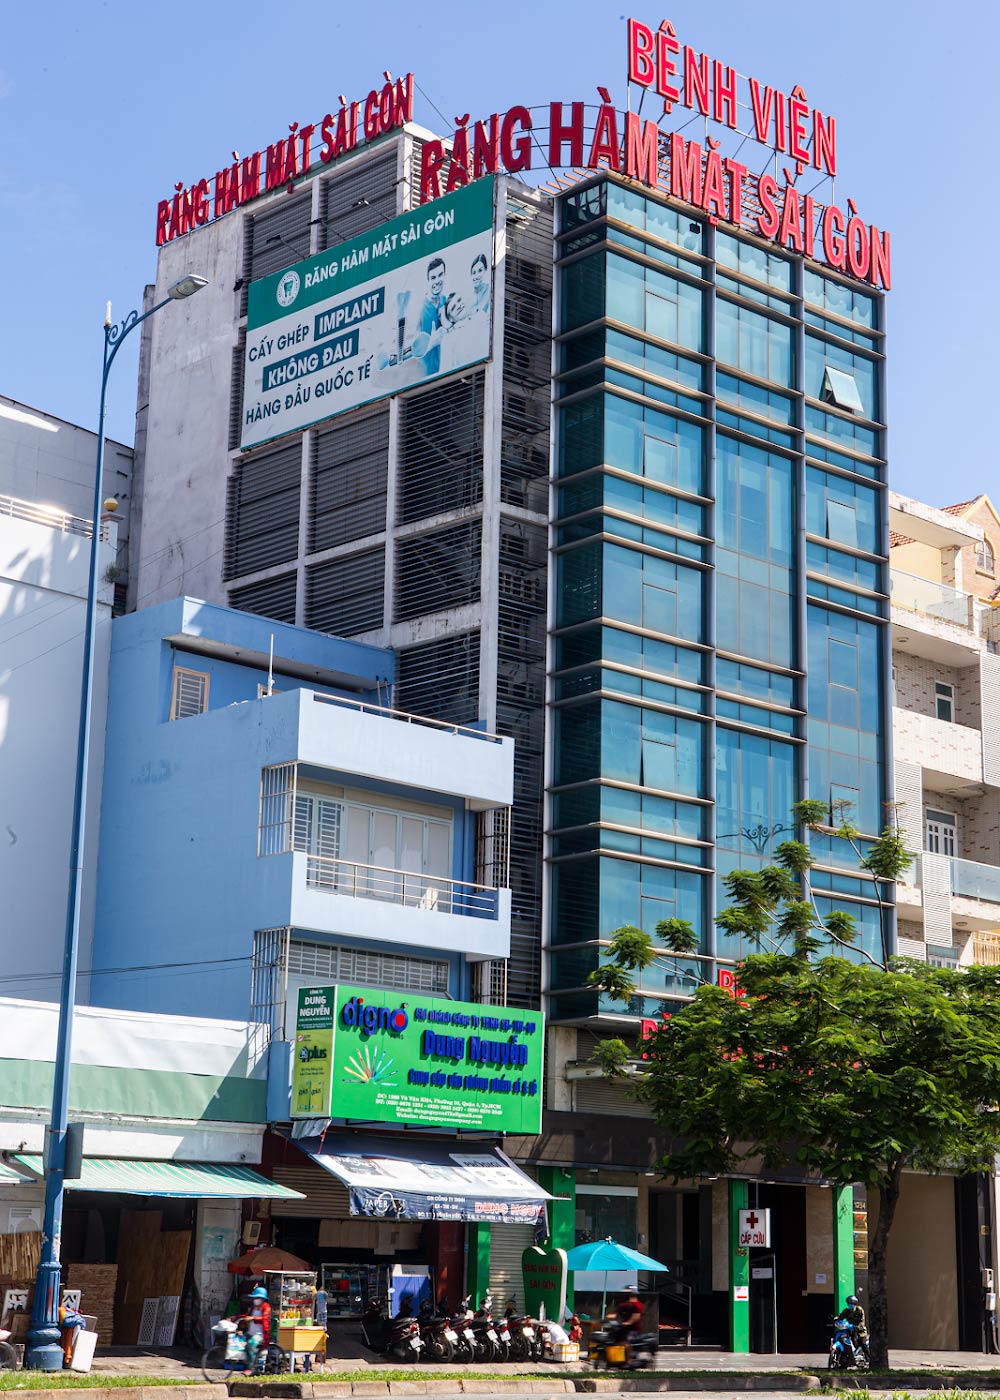 Bệnh viện răng hàm mặt Sài Gòn